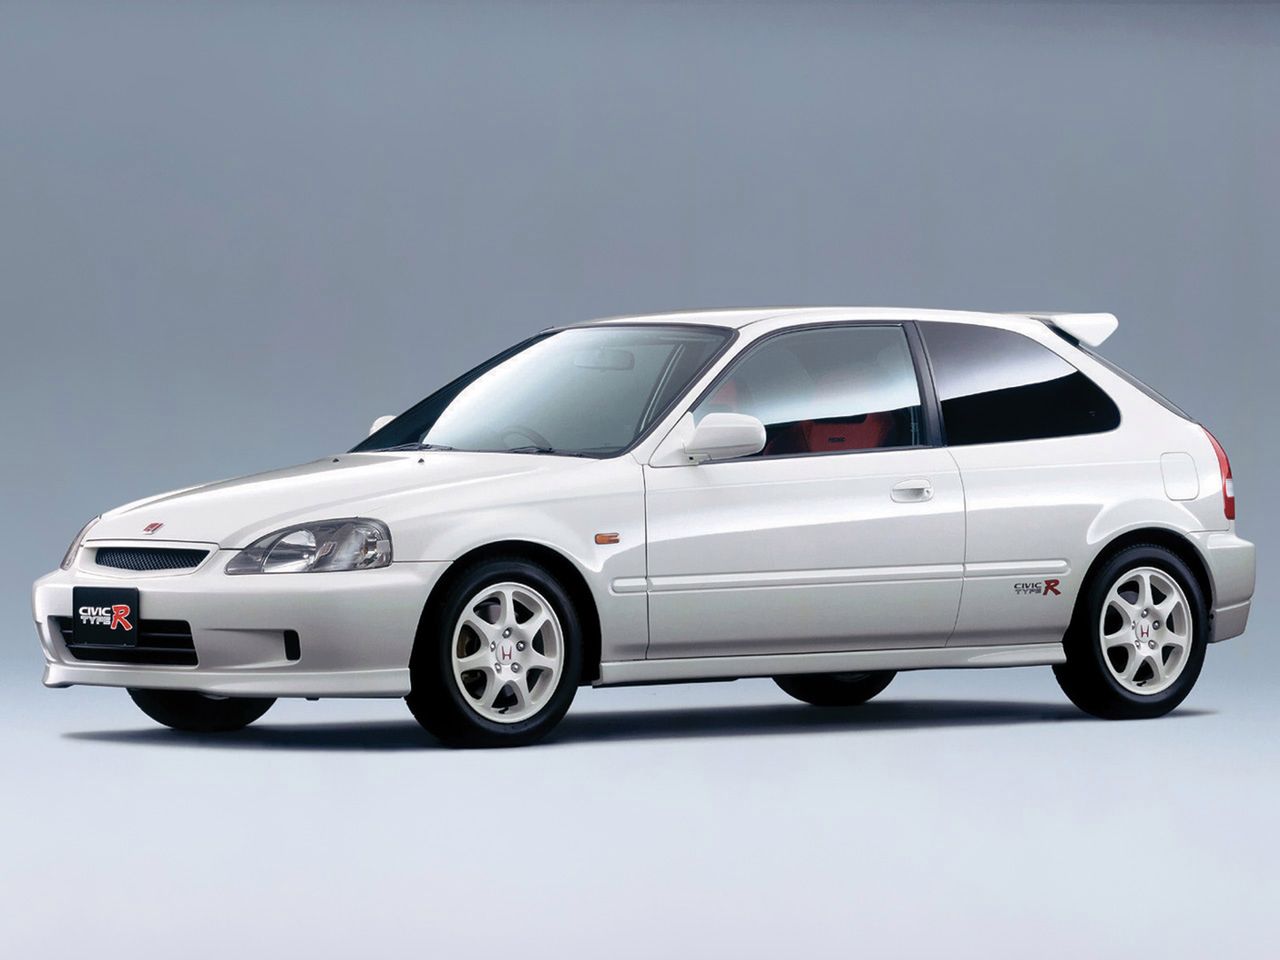 1999 Honda Civic Type R X (EK9)